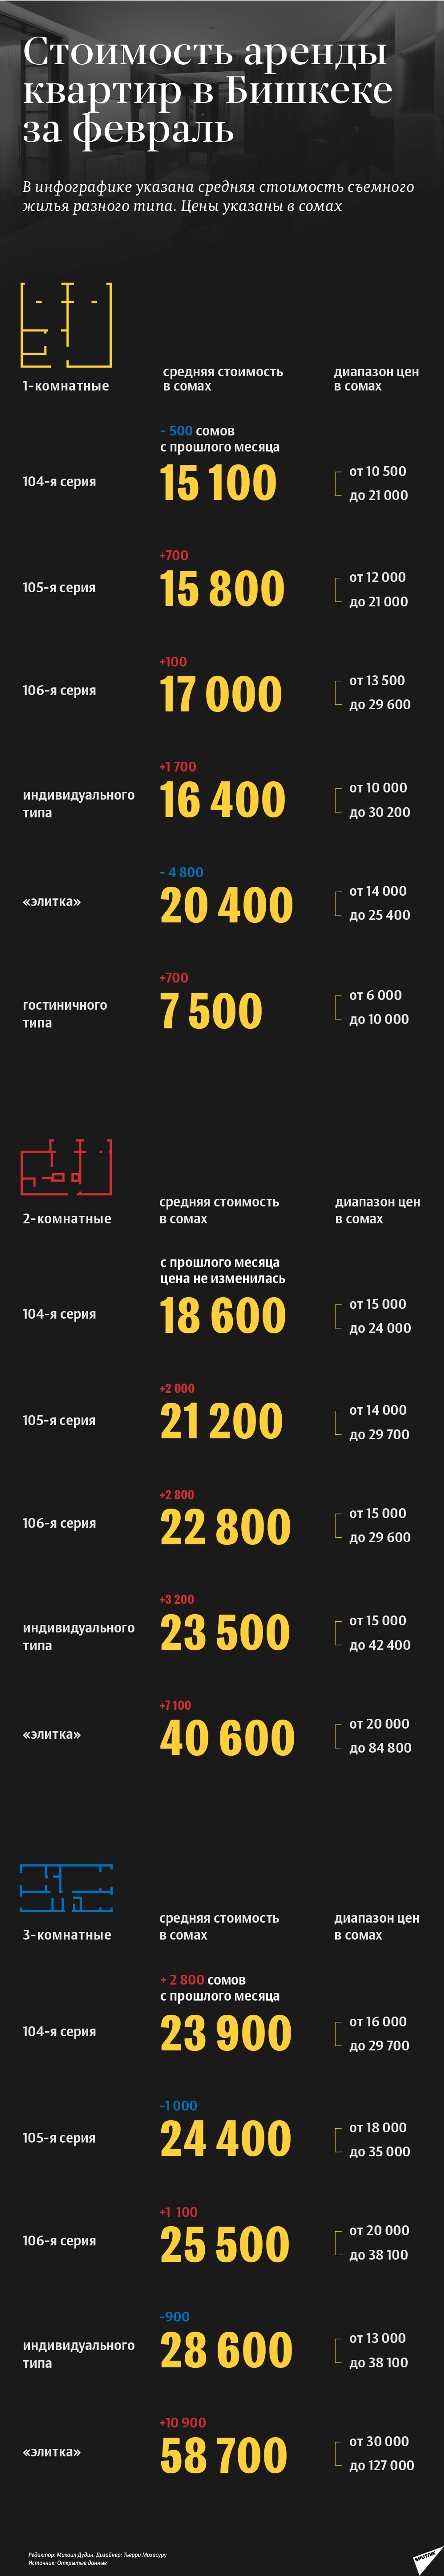 Стоимость аренды квартиры в Бишкеке - Sputnik Кыргызстан, 1920, 25.02.2021